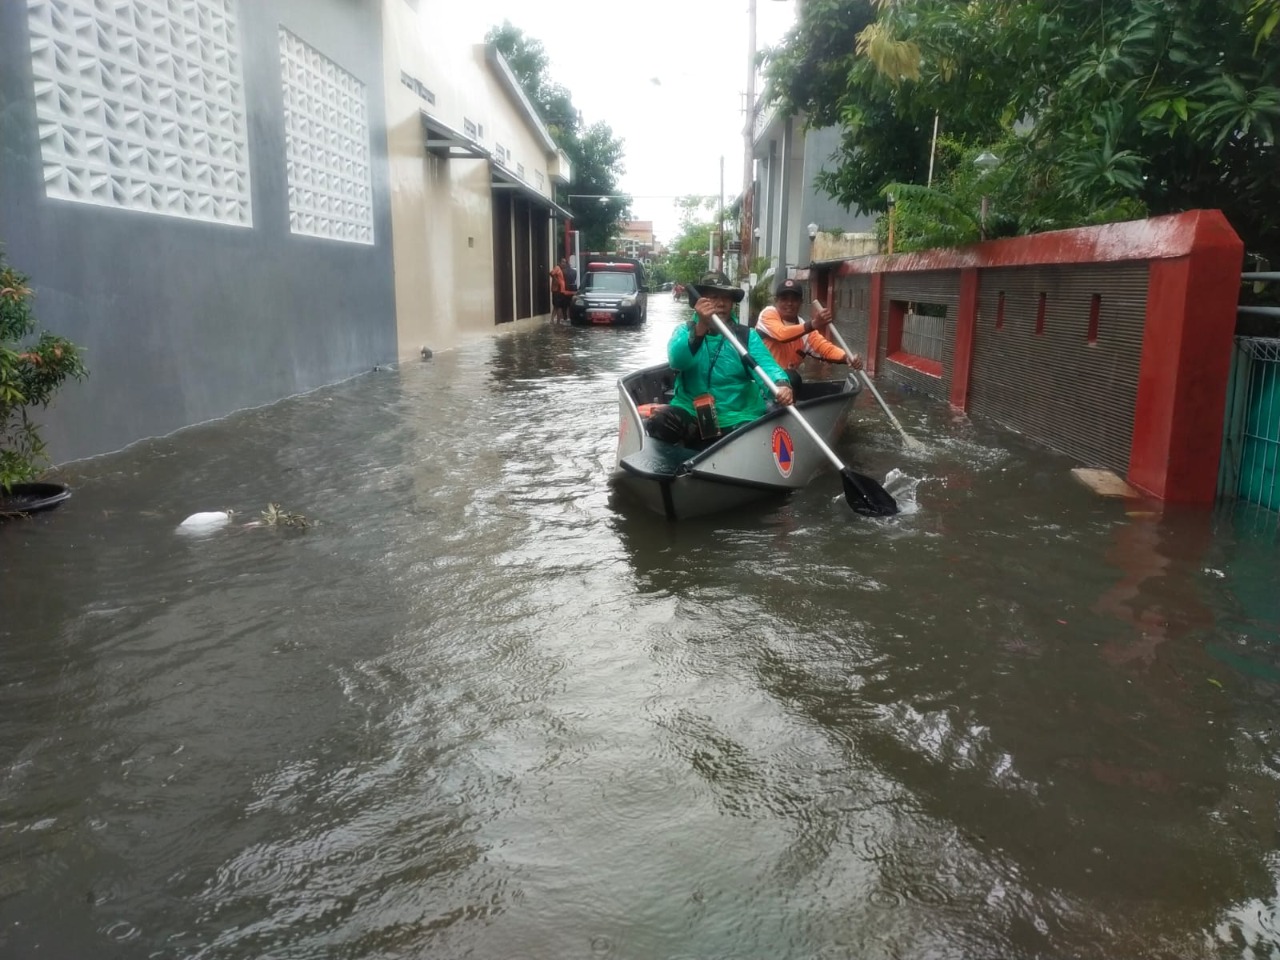 28 RT di Jakarta Terendam Banjir hingga 1 Meter, Berikut Lokasinya